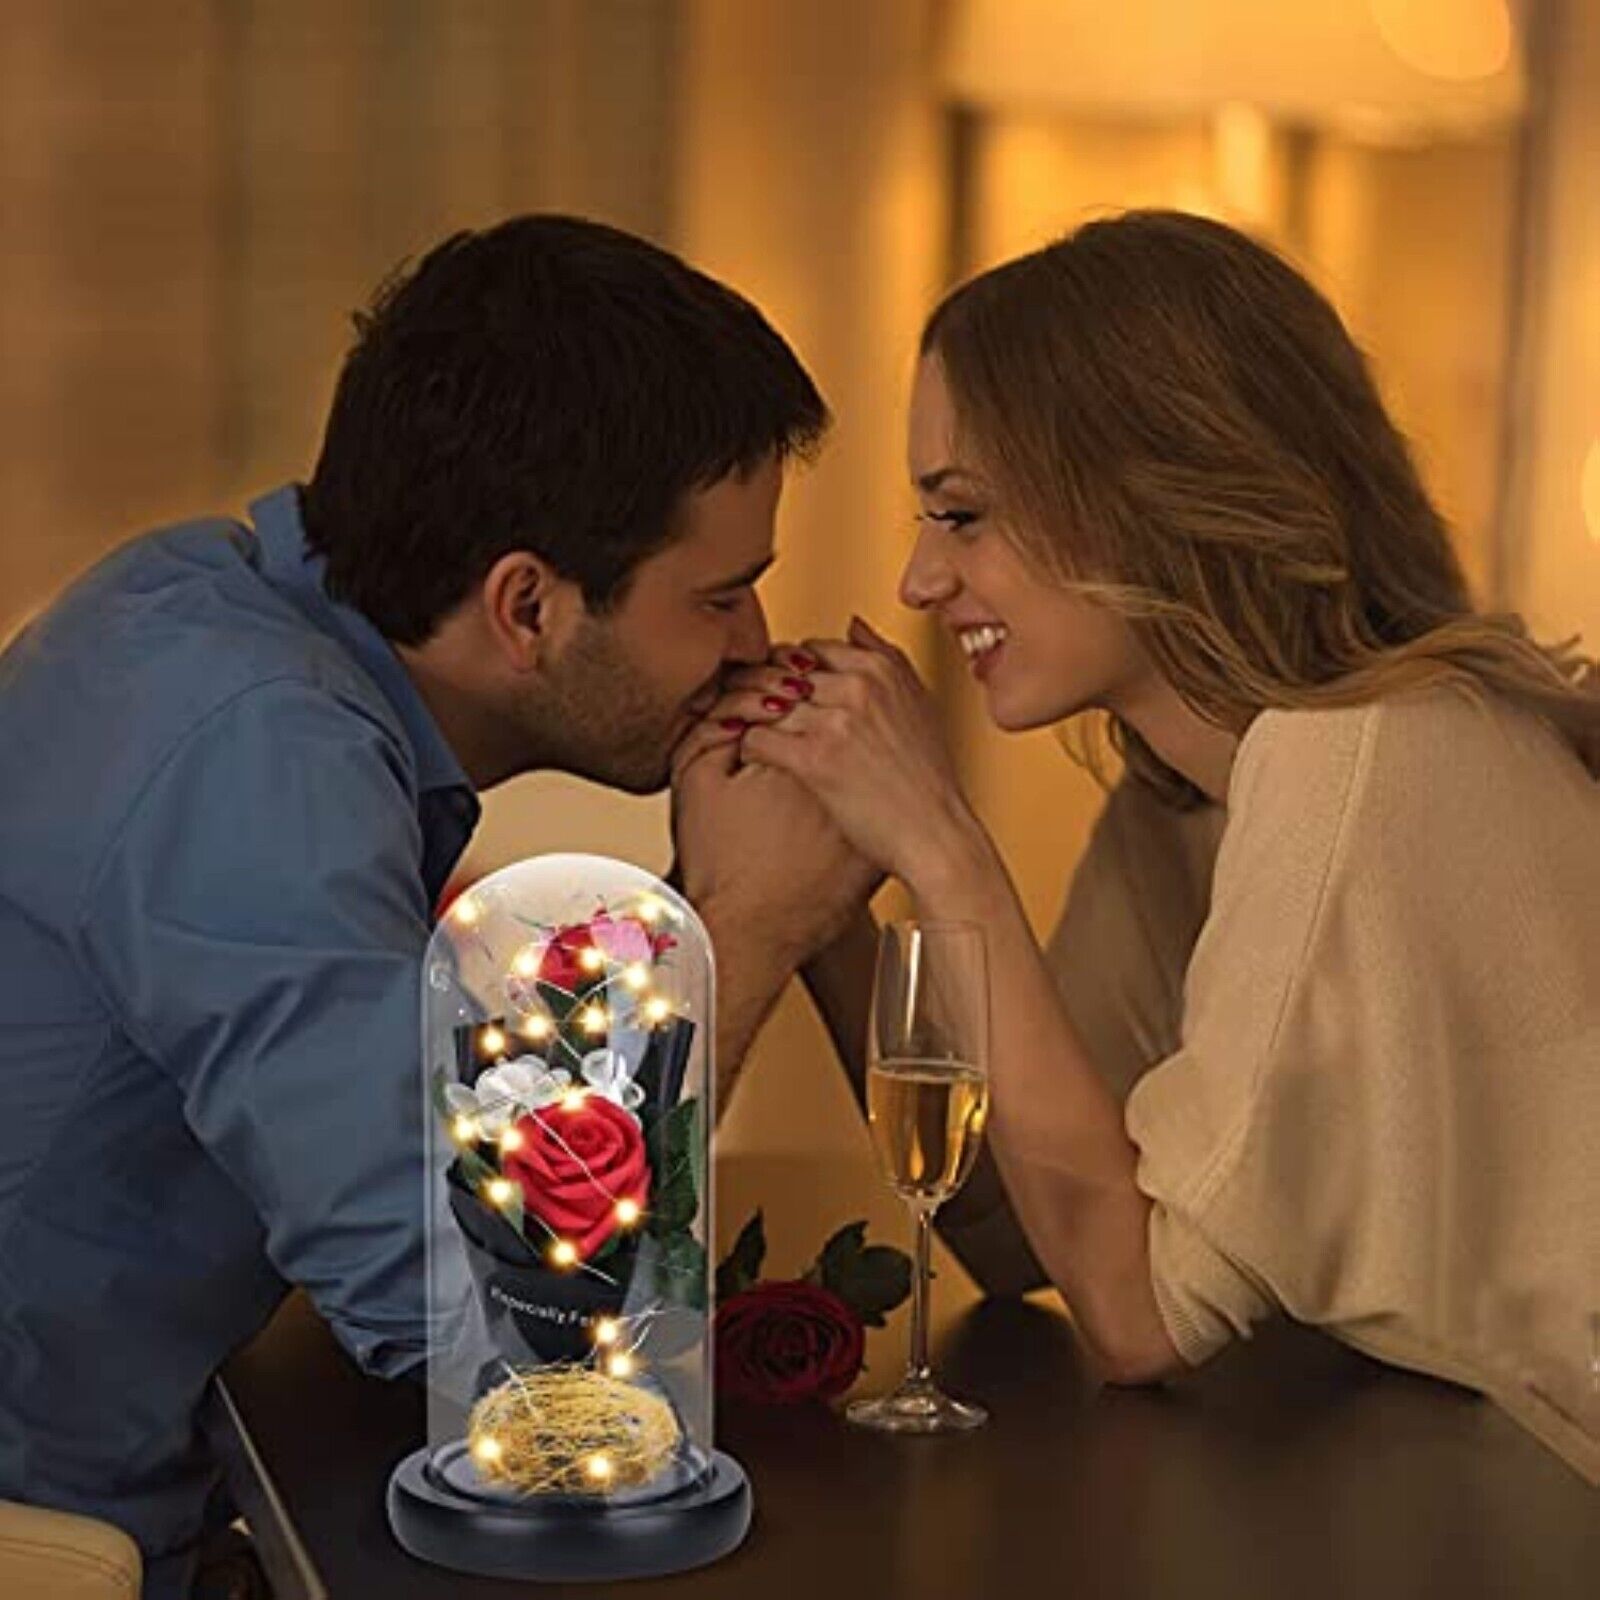 Valentinstag geschenk LED Die Schöne und das Biest Ewige Rose im Glas